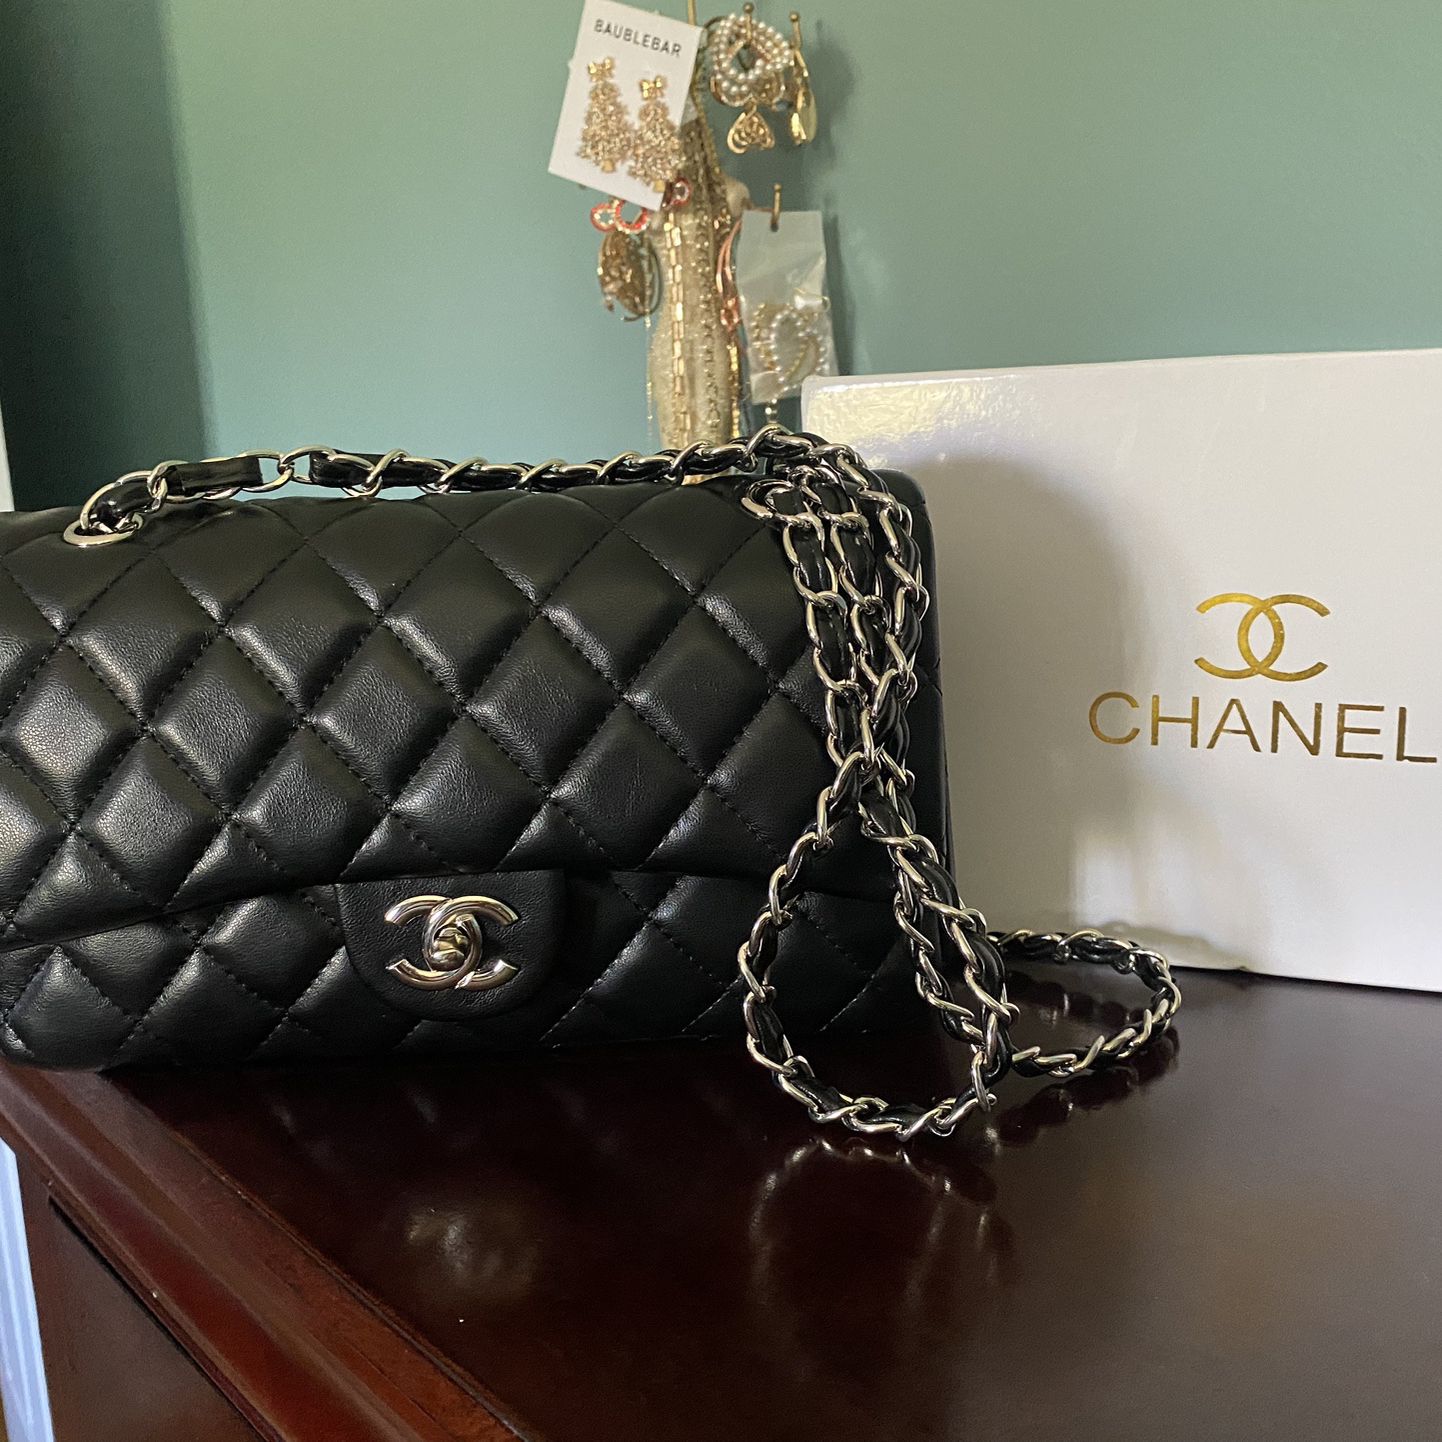 Chanel Lambskin Flap Bag for Sale in Riverside, CA - OfferUp